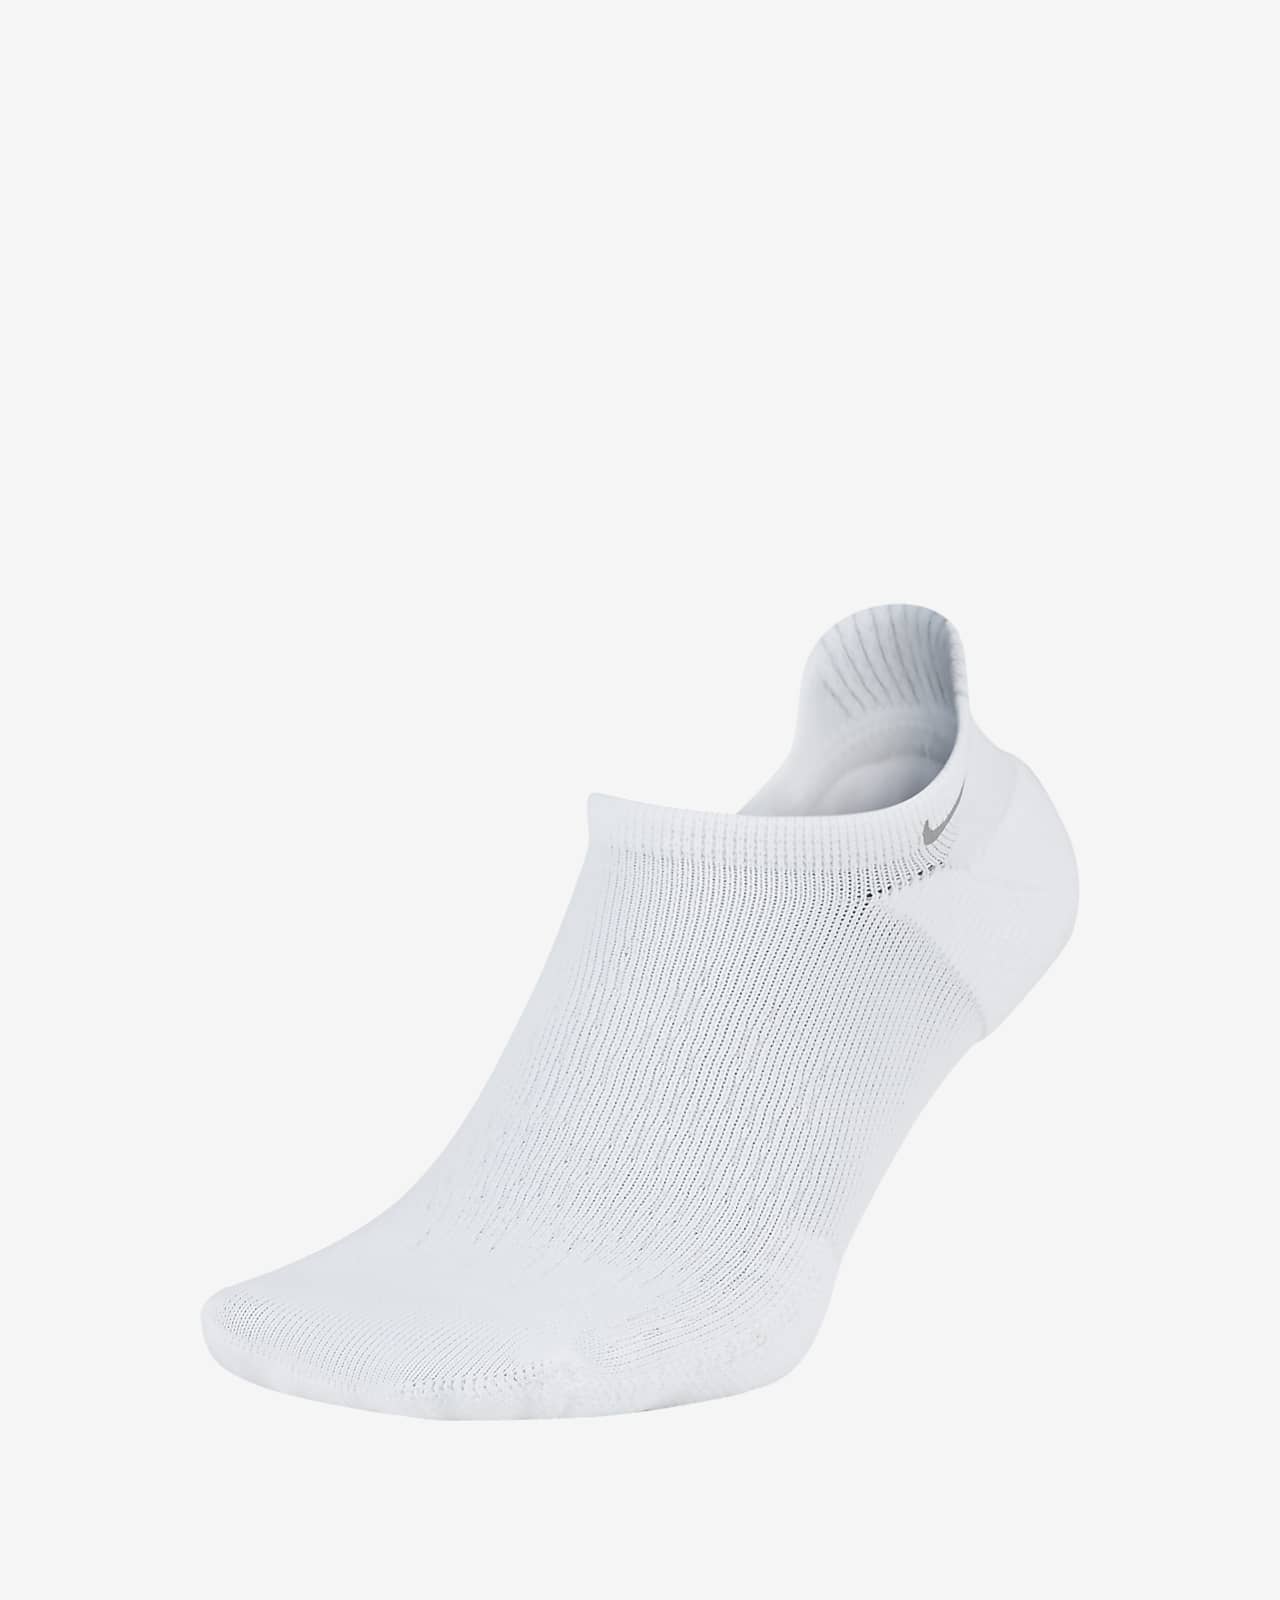 elite cushioned socks